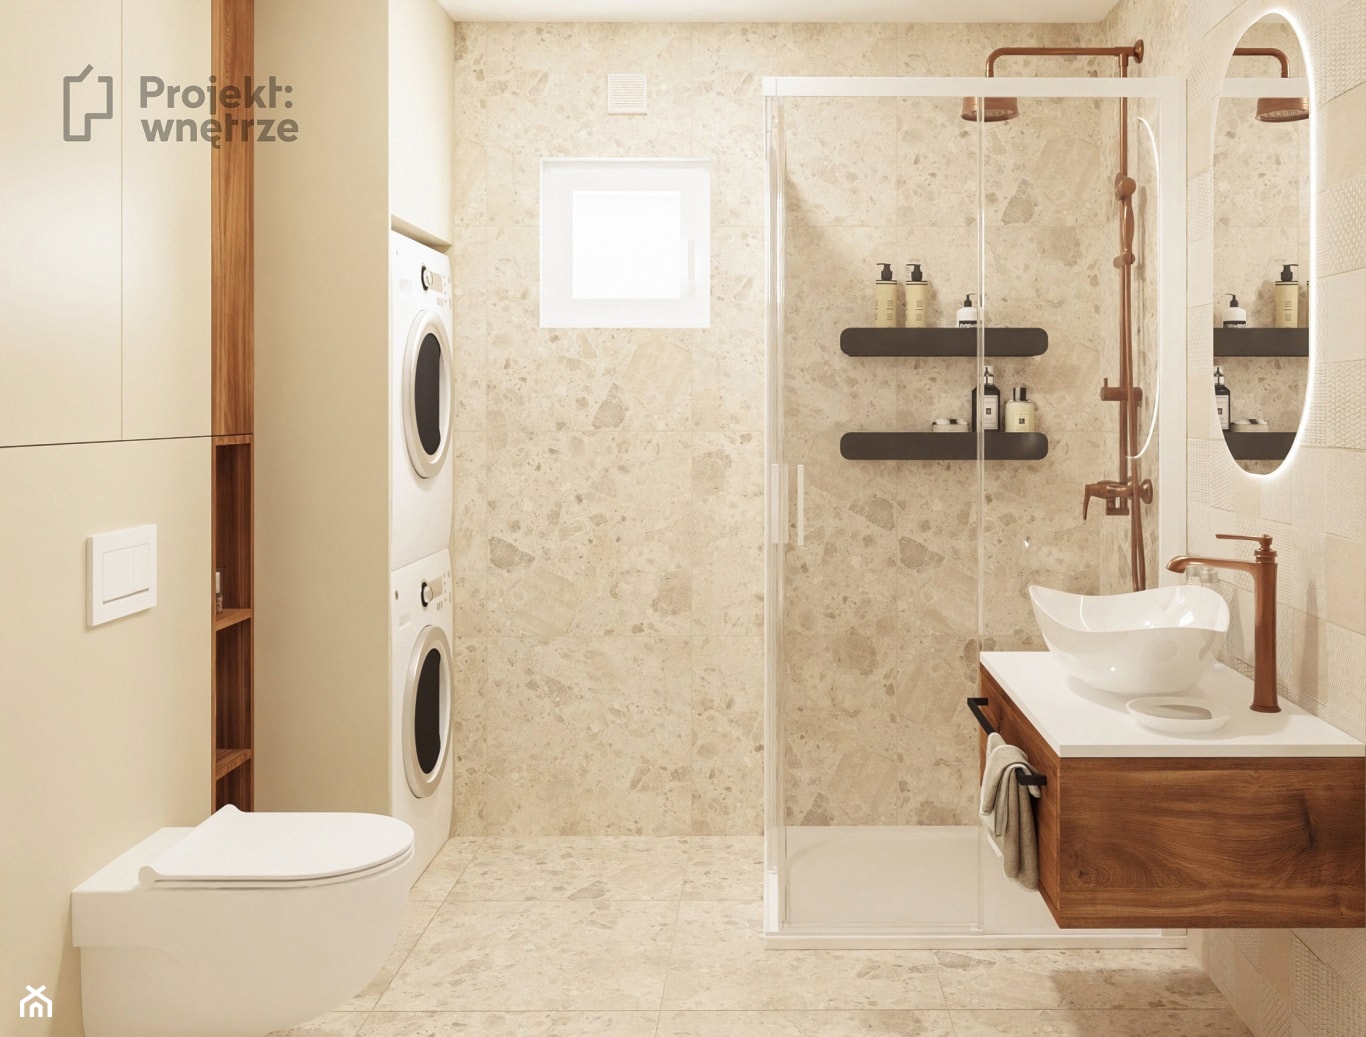 Mała łazienka, styl nowoczesny, kolor beżowy, z oknem, z prysznicem, japandi wabi sabi płytki lastryko PROJEKT:WNĘTRZ - zdjęcie od PROJEKT: WNĘTRZE - Homebook